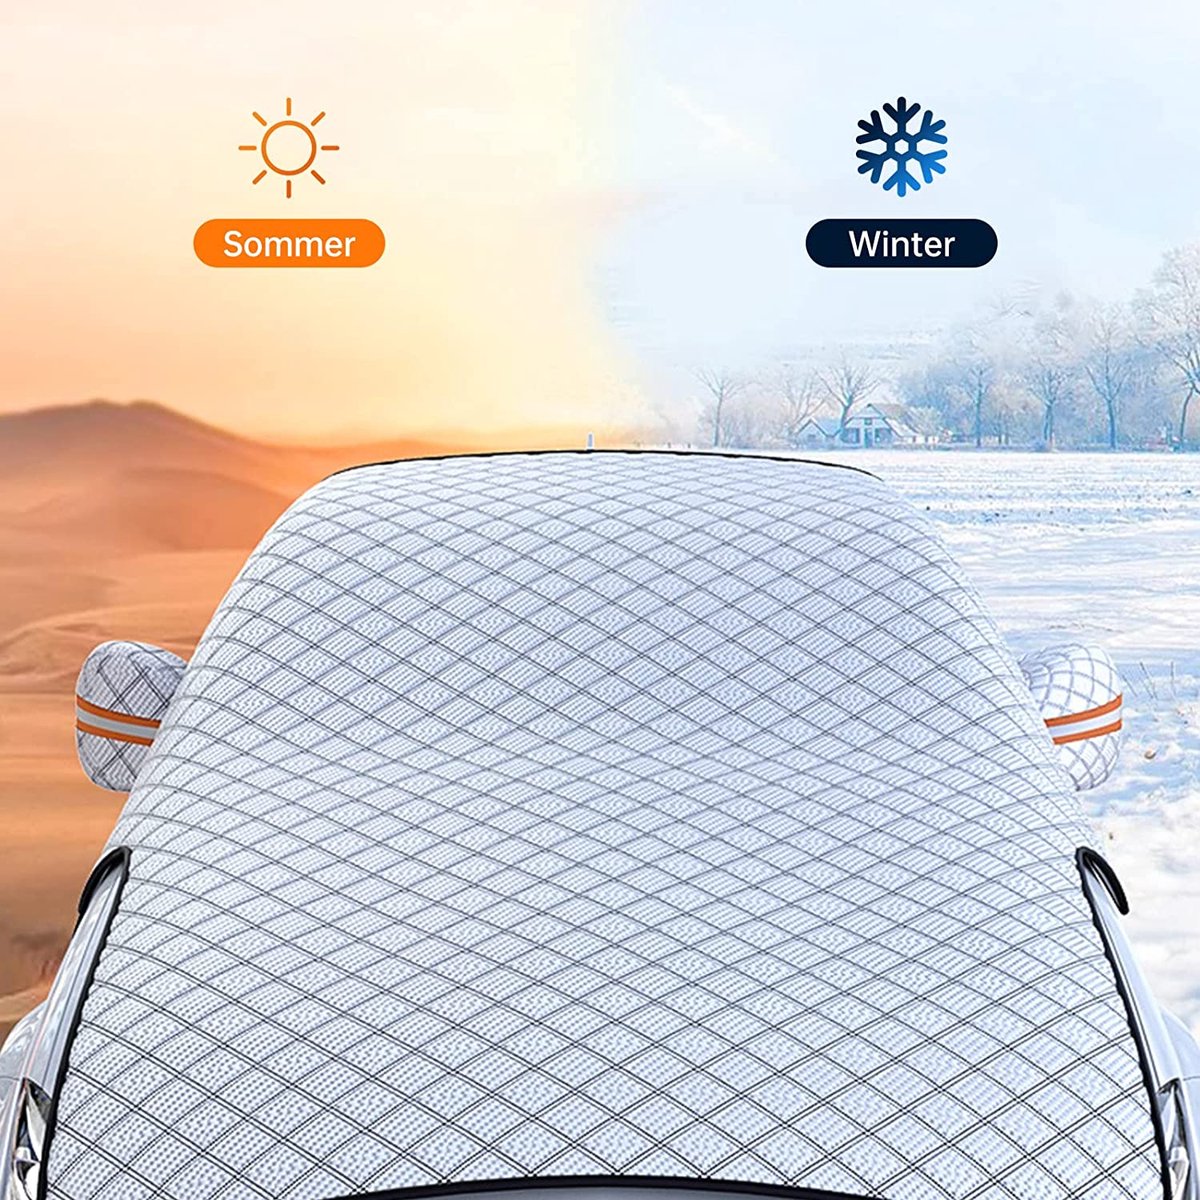 voiture pare-brise couverture anti neige gel glace bouclier poussière  protecteur chaleur soleil ombre magnétique voiture fenêtre écran gel grande  couverture de neige